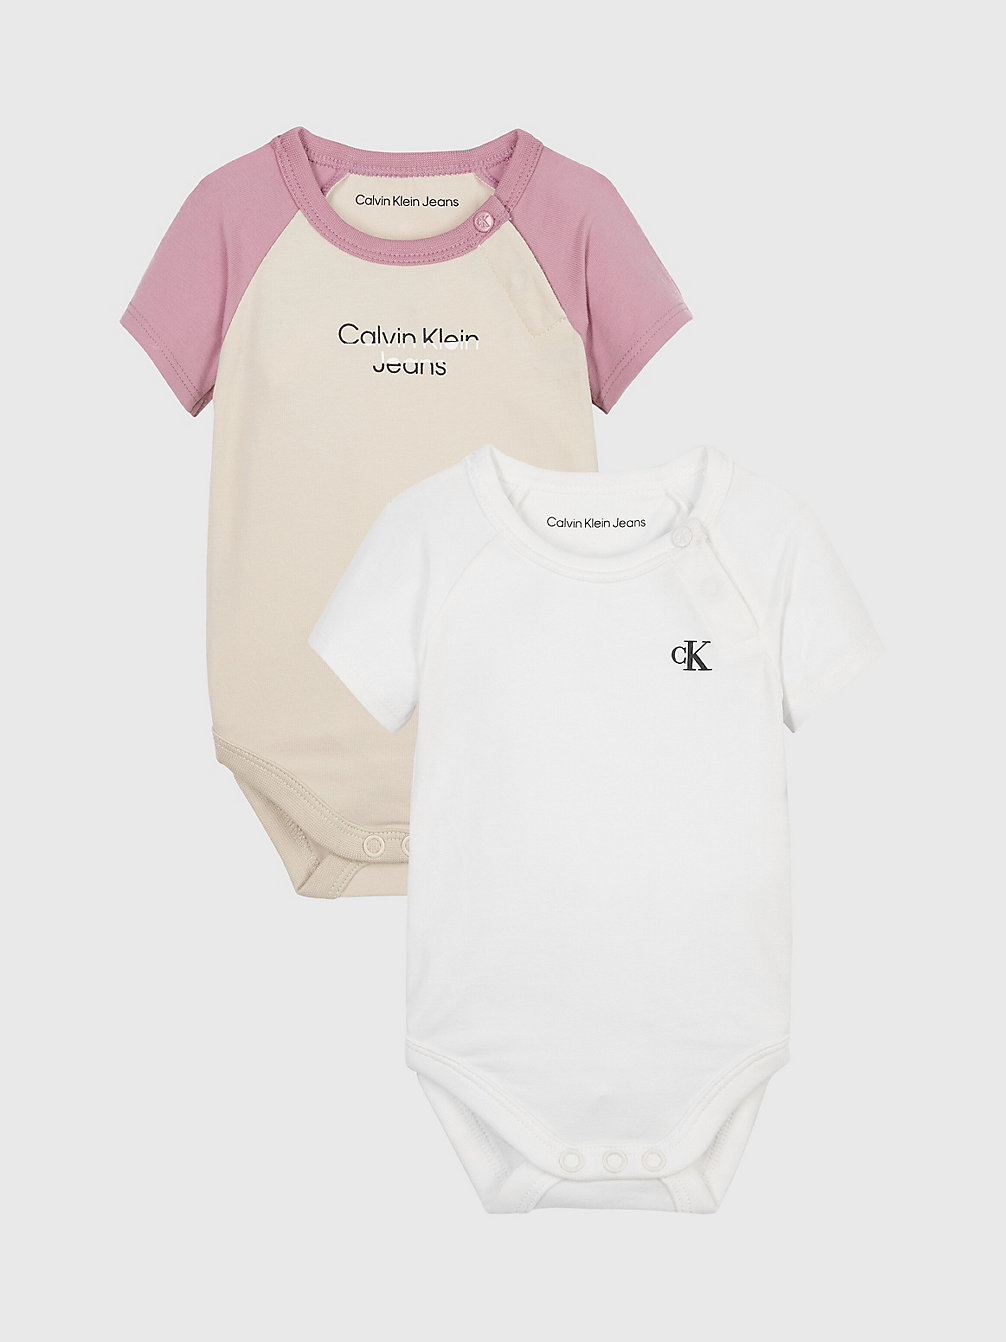 BRIGHT WHITE / CLASSIC BEIGE > 2er-Pack Baby-Body > undefined newborn - Calvin Klein